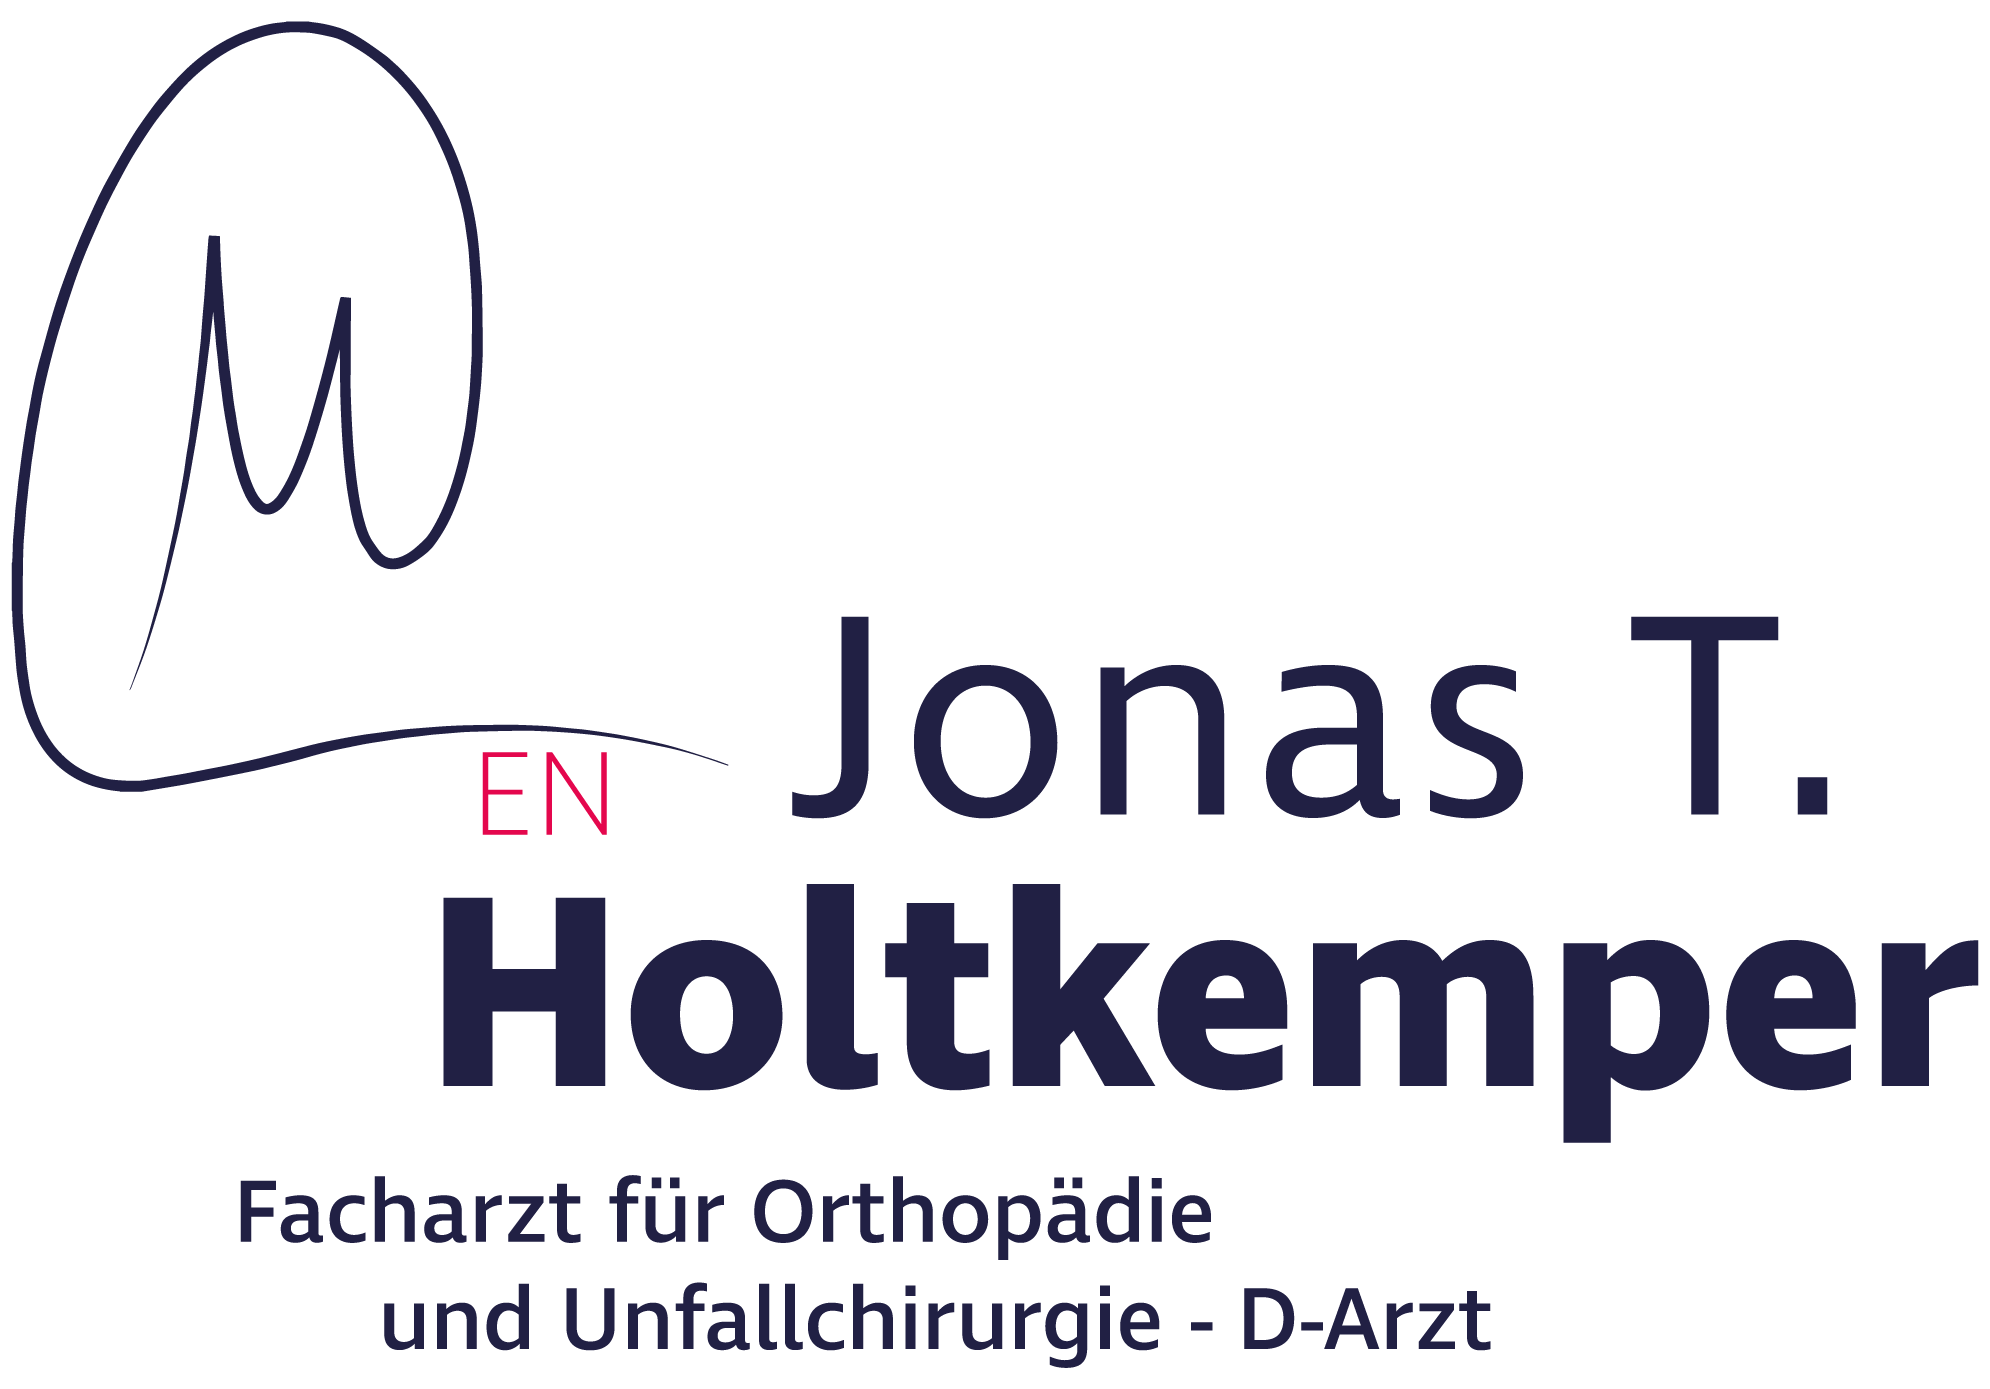 Jonas T. Holtkemper Facharzt für Orthopädie